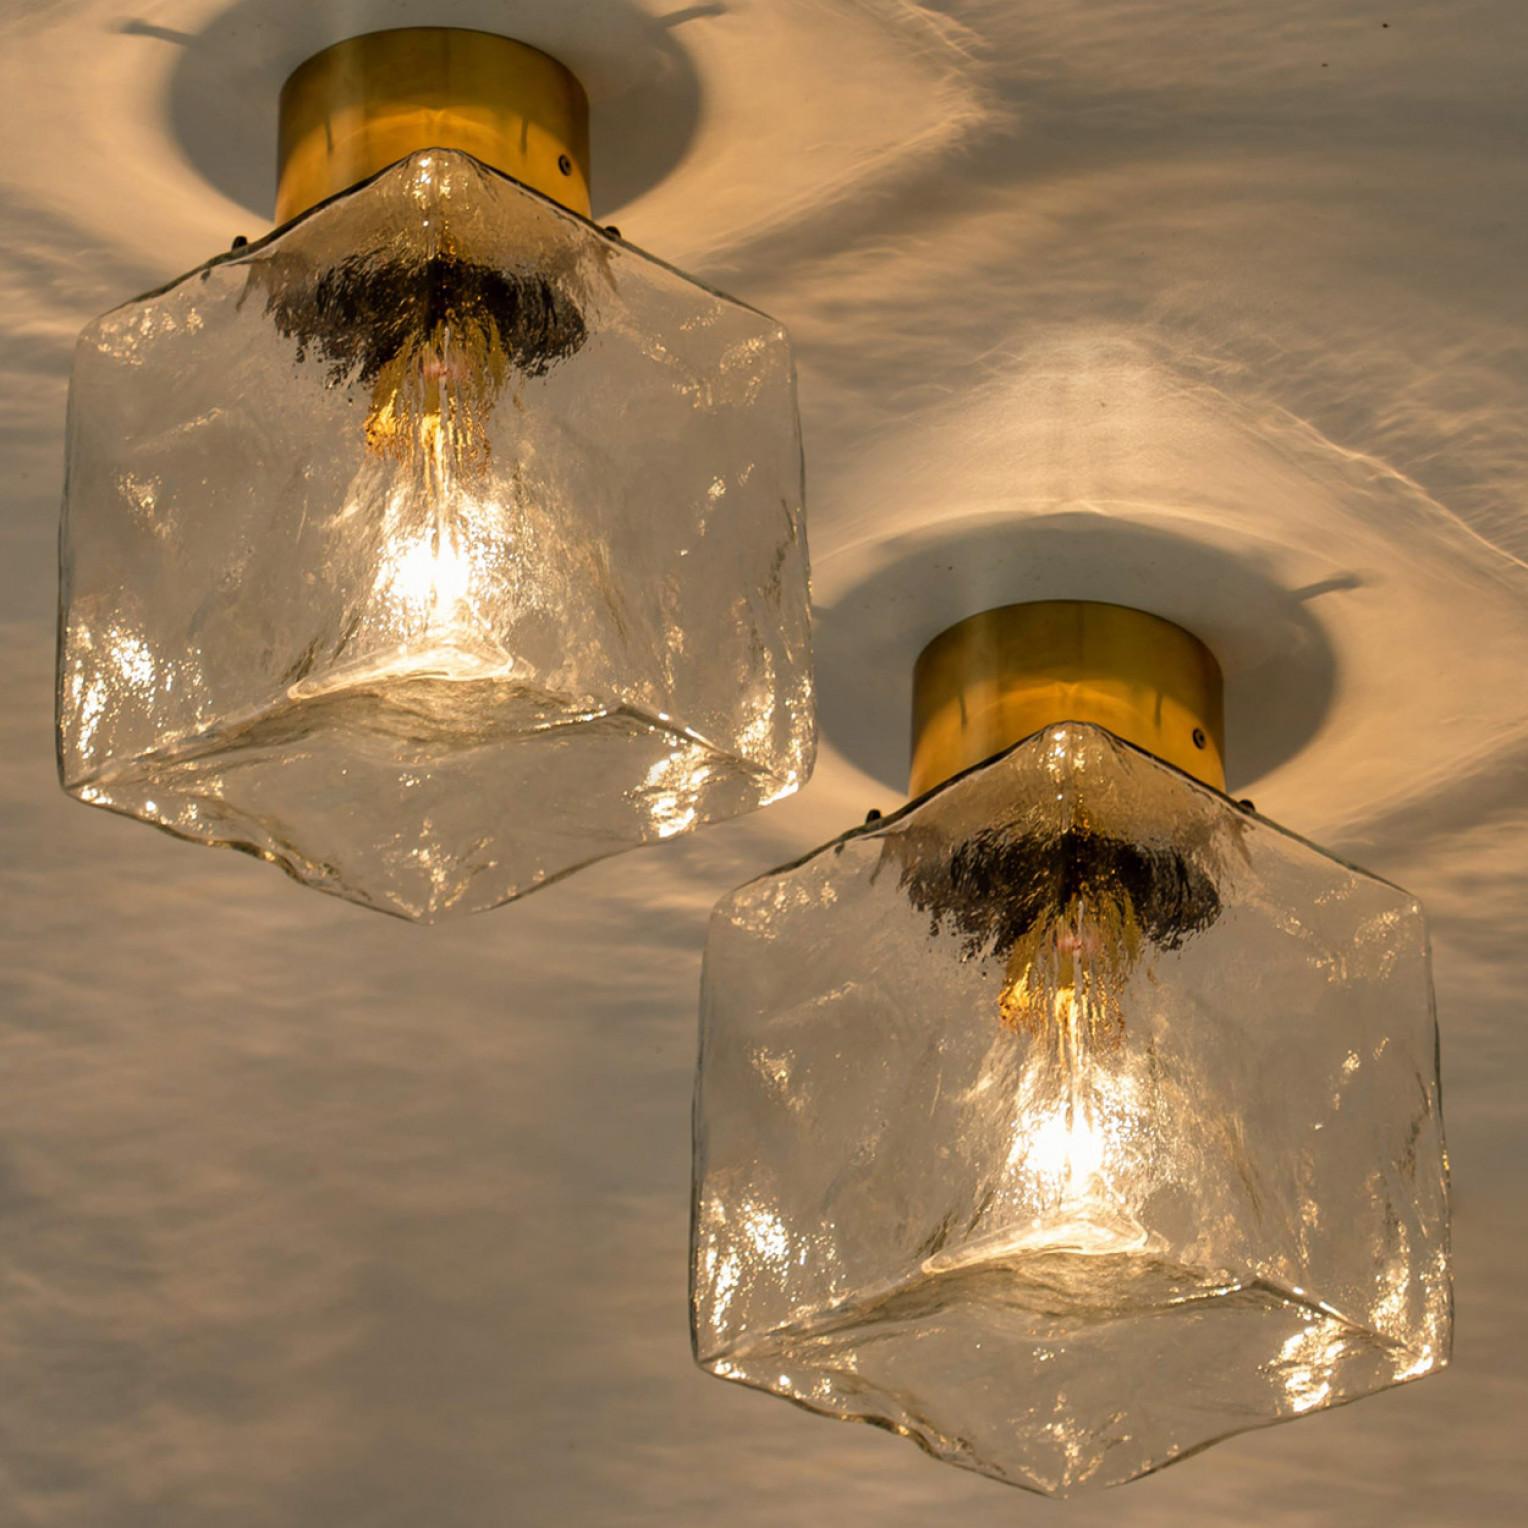 Eine der drei Beleuchtungskörper von J.T. Kalmar, Wien, Österreich, hergestellt ca. 1960.

Jede quadratische Wandleuchte hat eine quadratische Messingrückwand mit einem quadratischen Milchglas an der Spitze. Die Schlichtheit dieser Leuchte passt zu